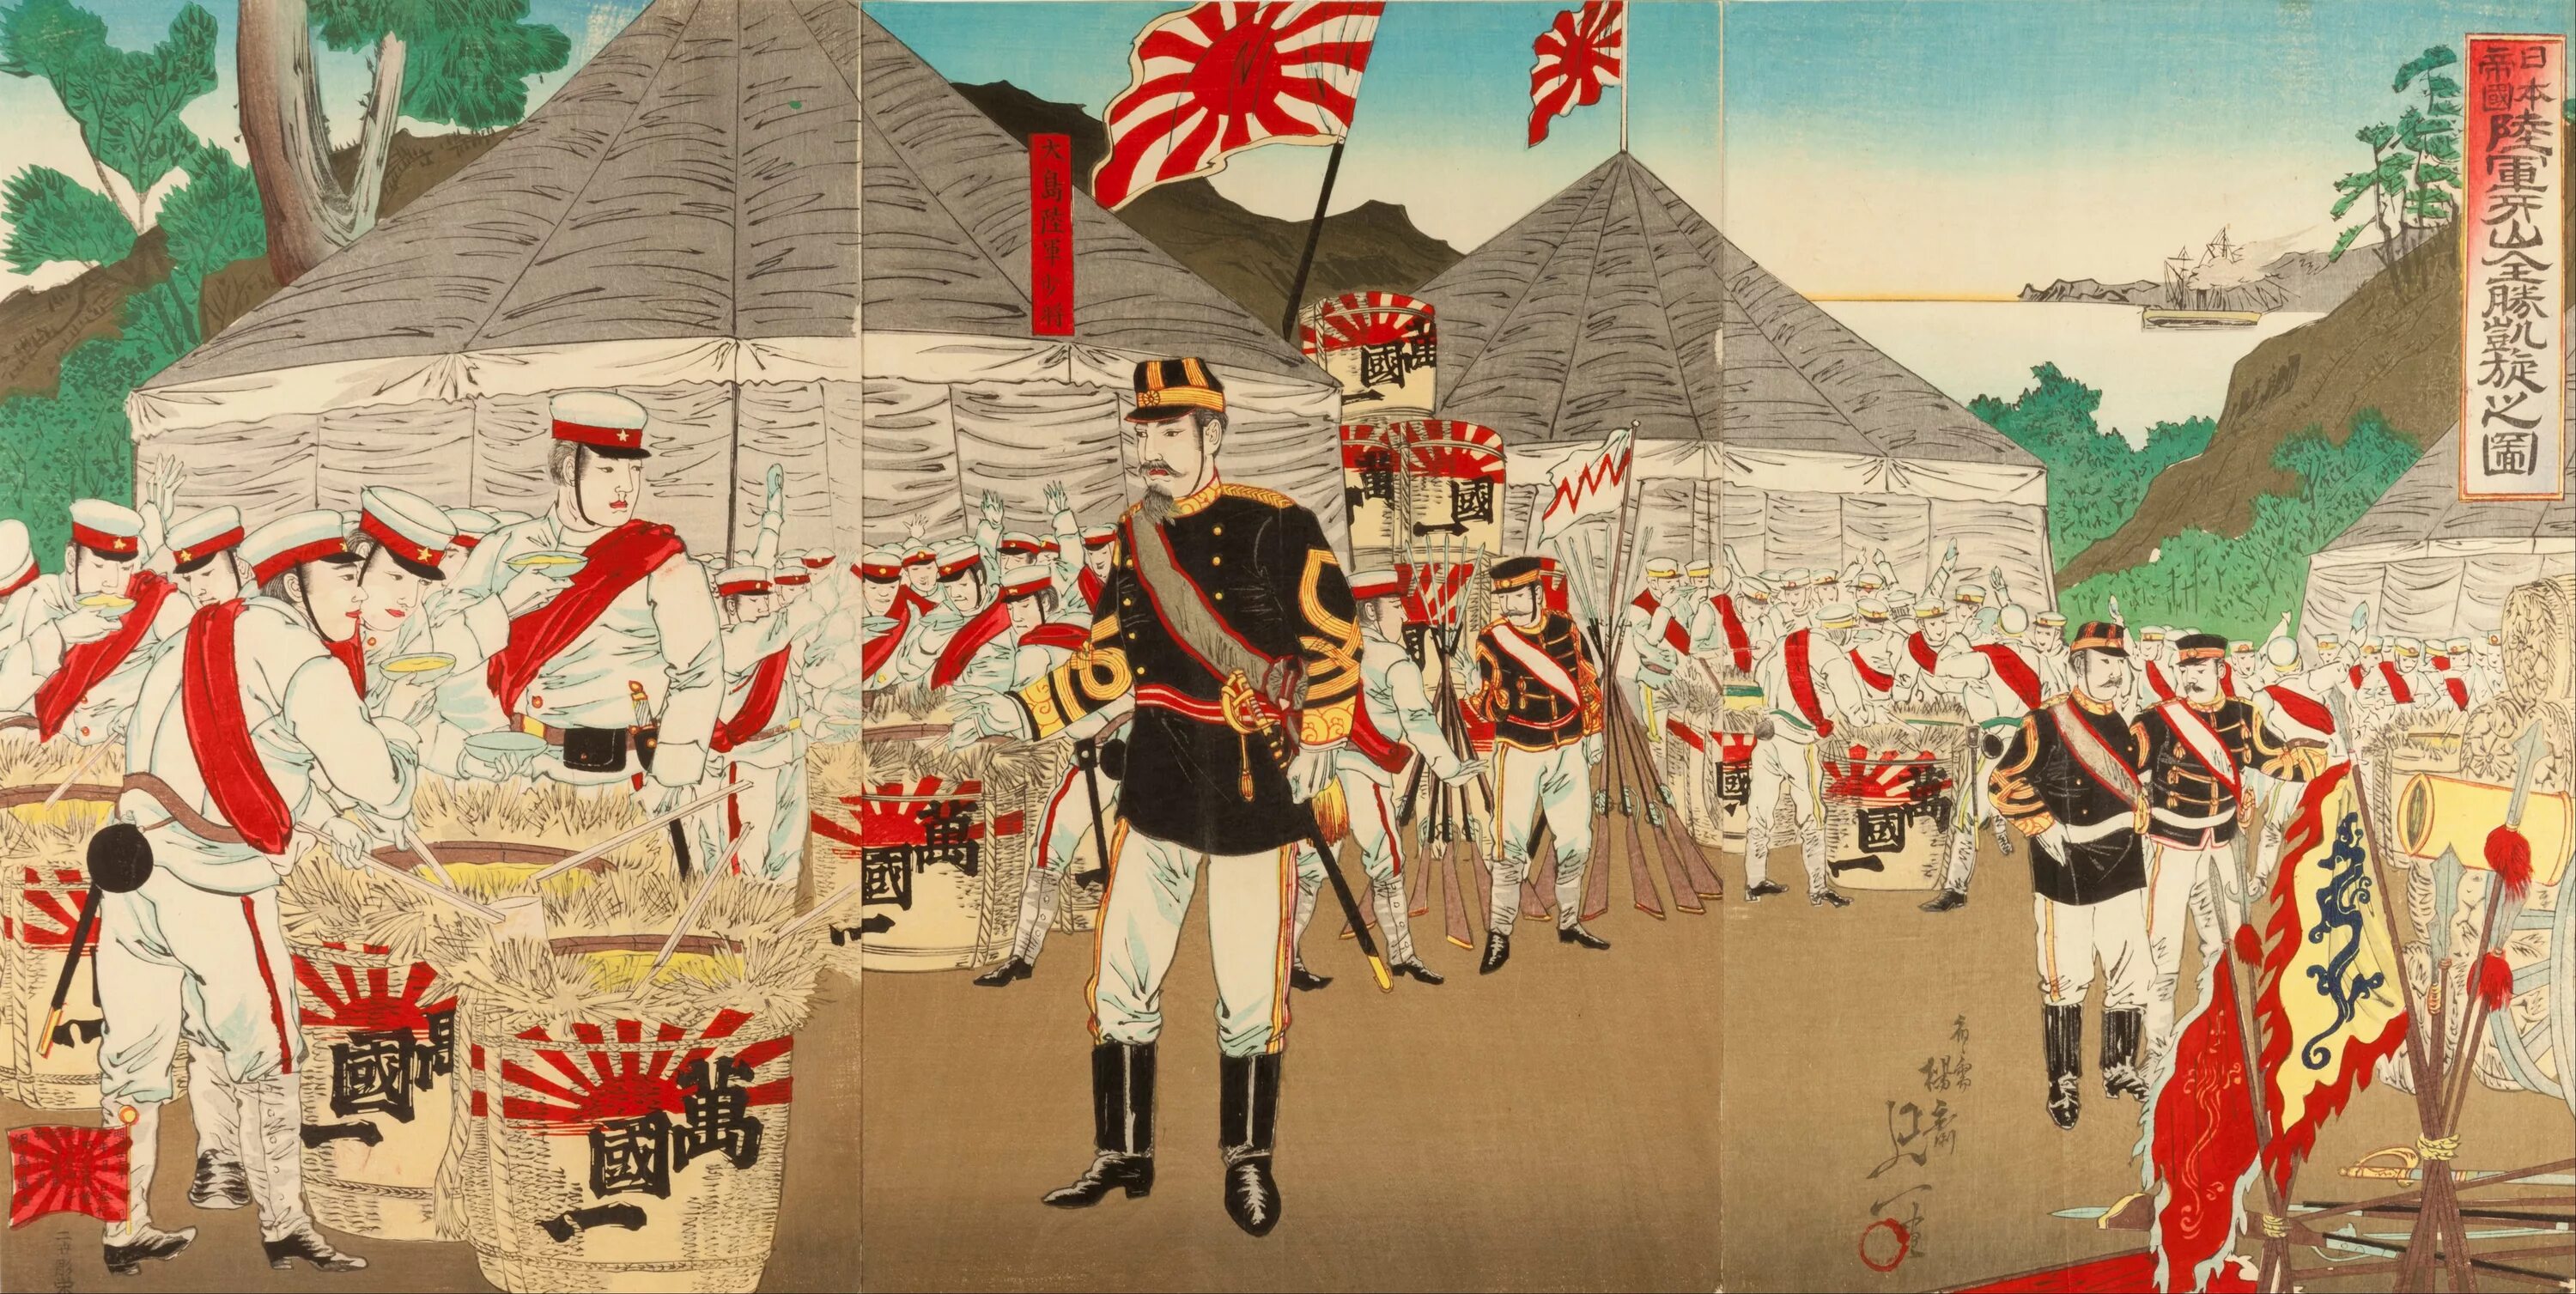 Императорская армия Японии революция Мэйдзи. Флаг императорской армии Японии. Флаг японской империи в эпоху Мэйдзи. Японский флаг Мэйдзи.